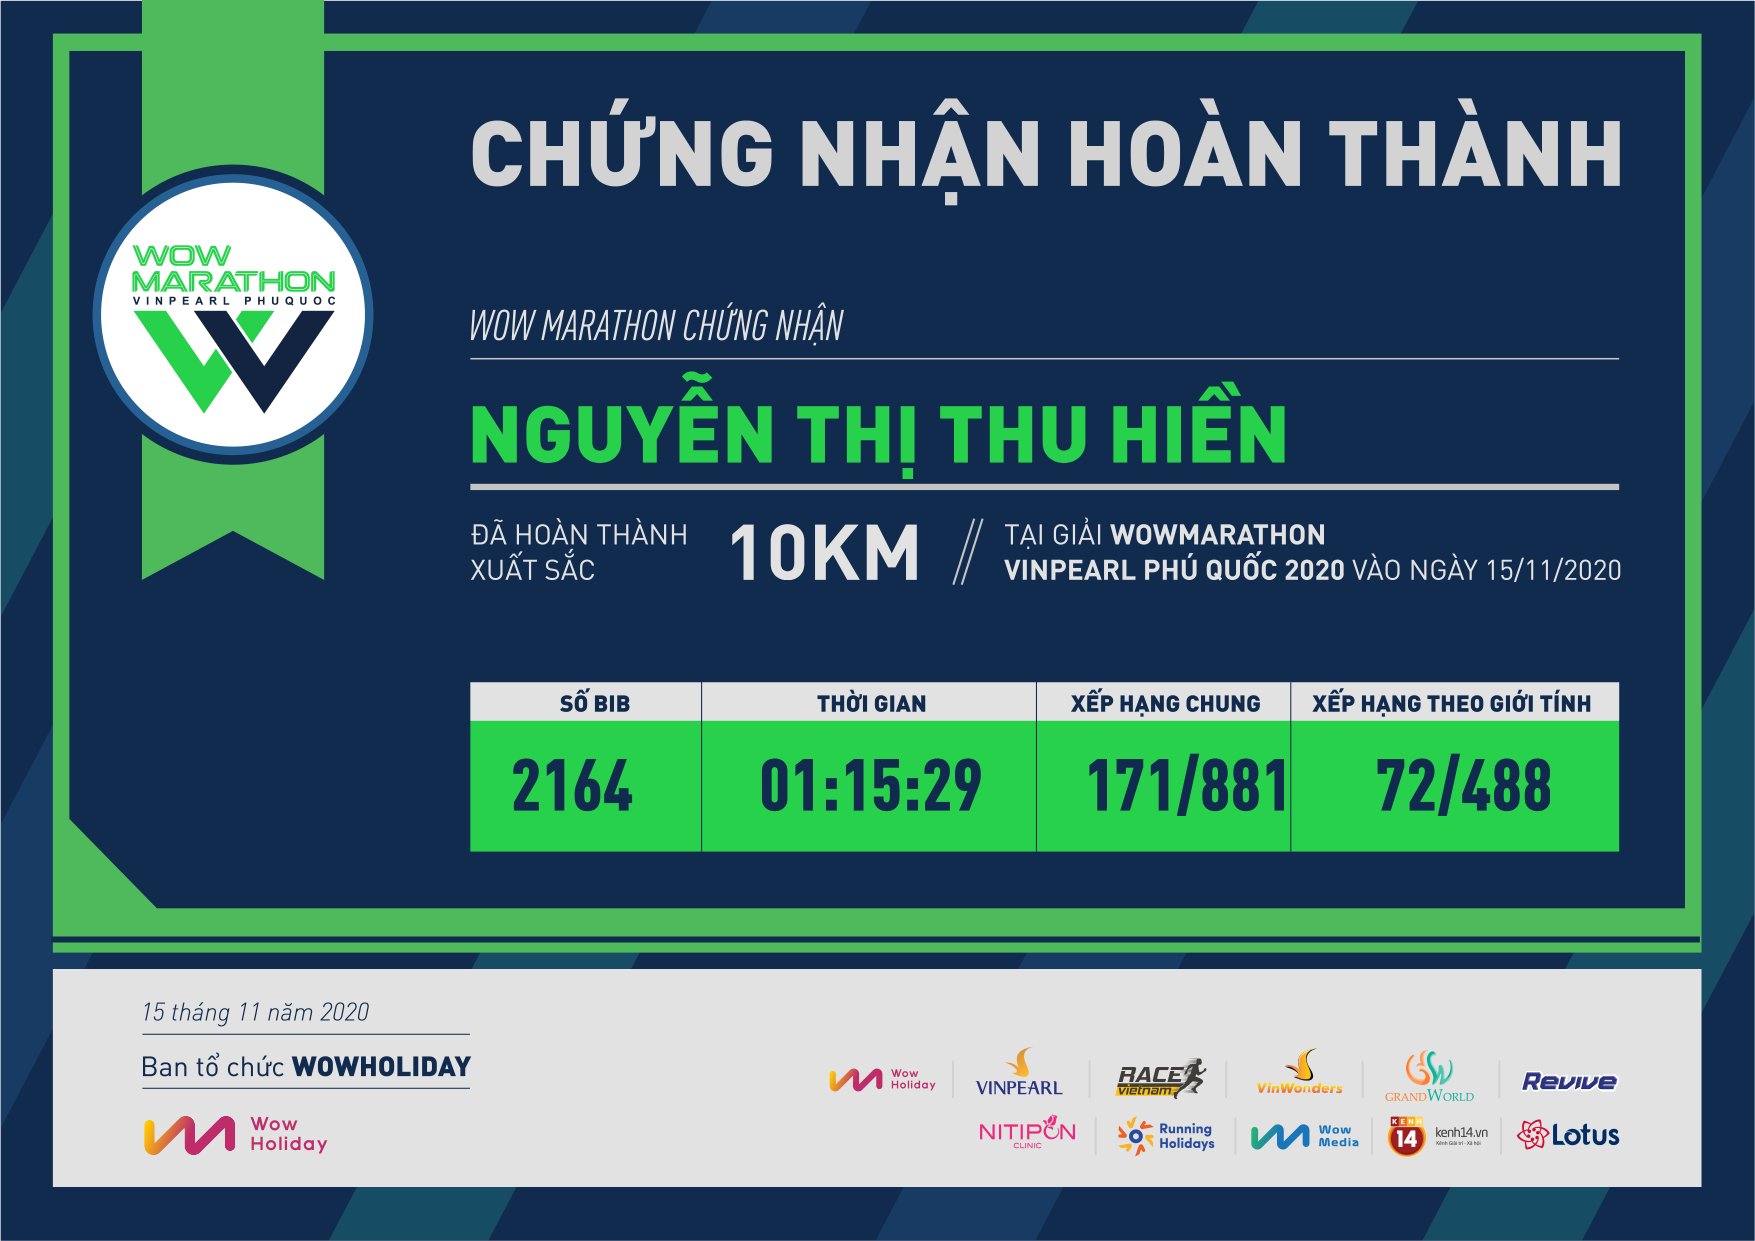 2164 - Nguyễn Thị Thu Hiền